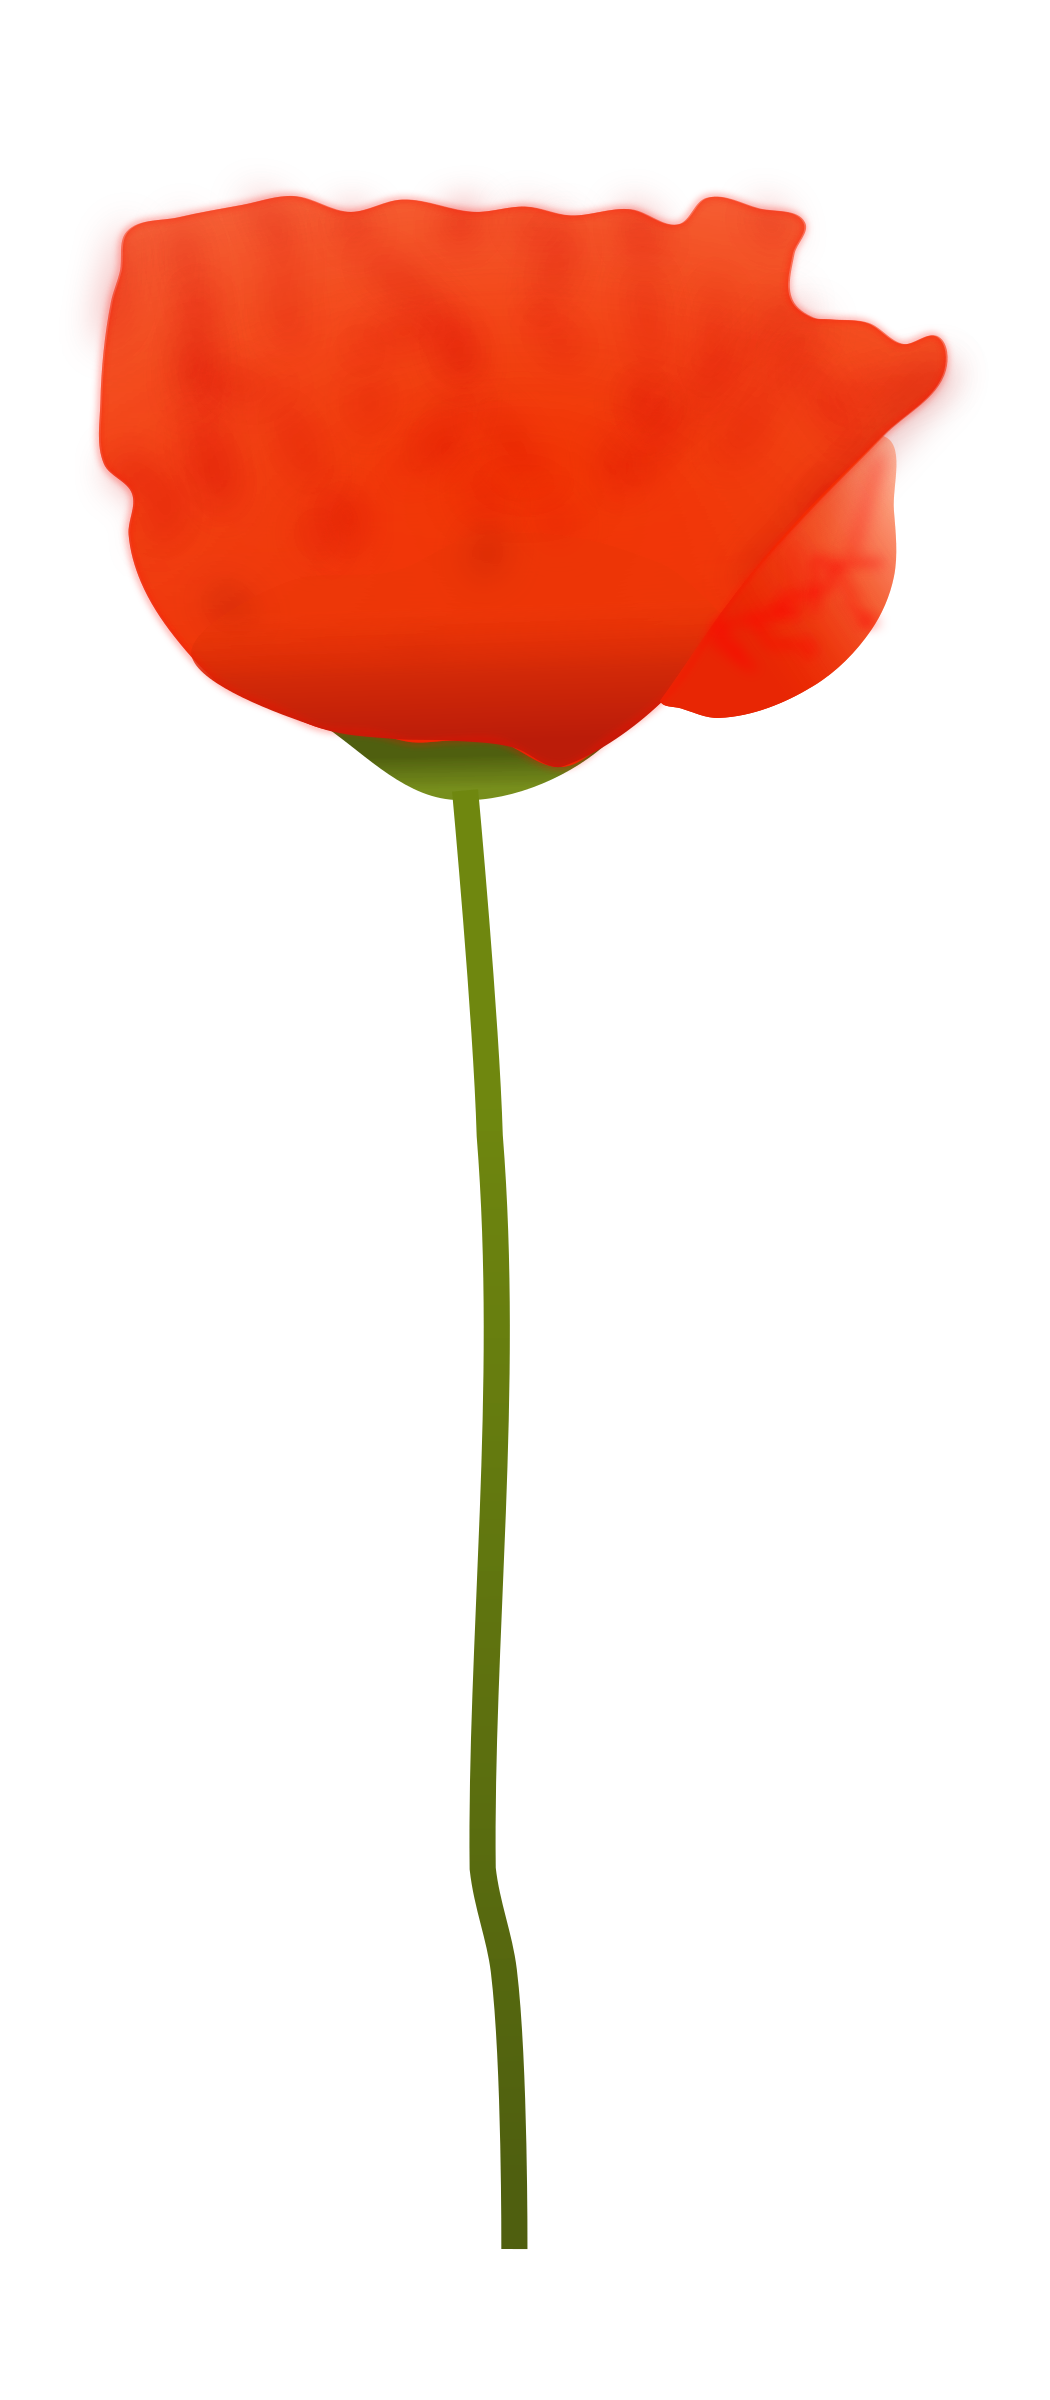 Red Poppy Flower Clipart